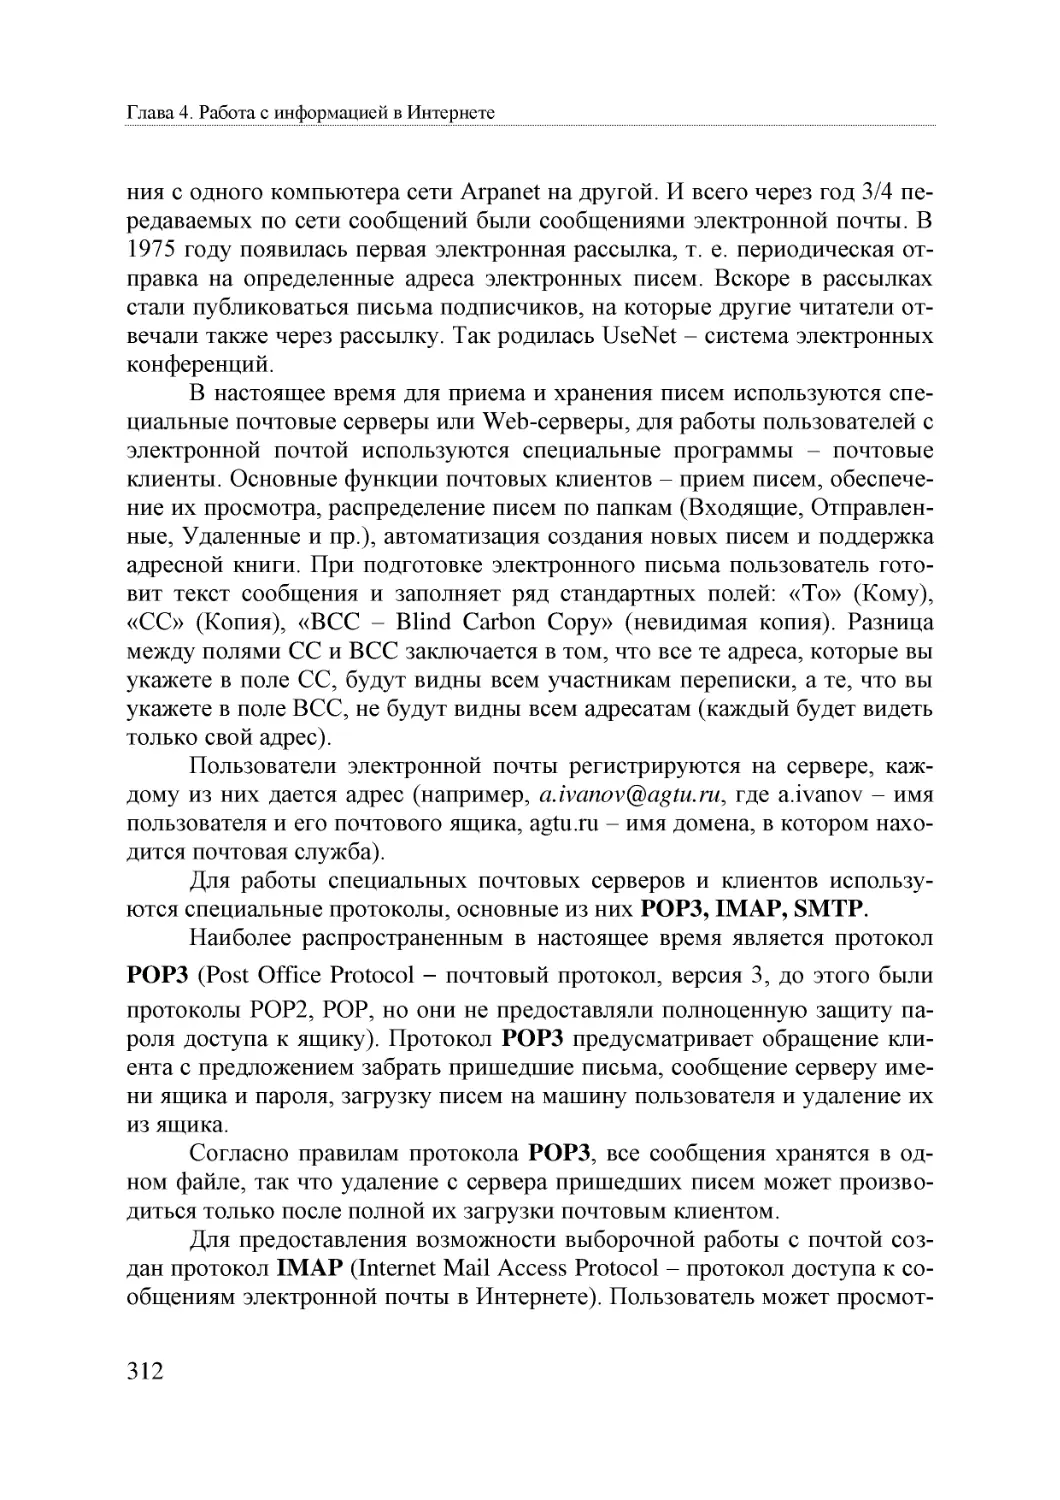 Informatika_Uchebnik_dlya_vuzov_2010 312